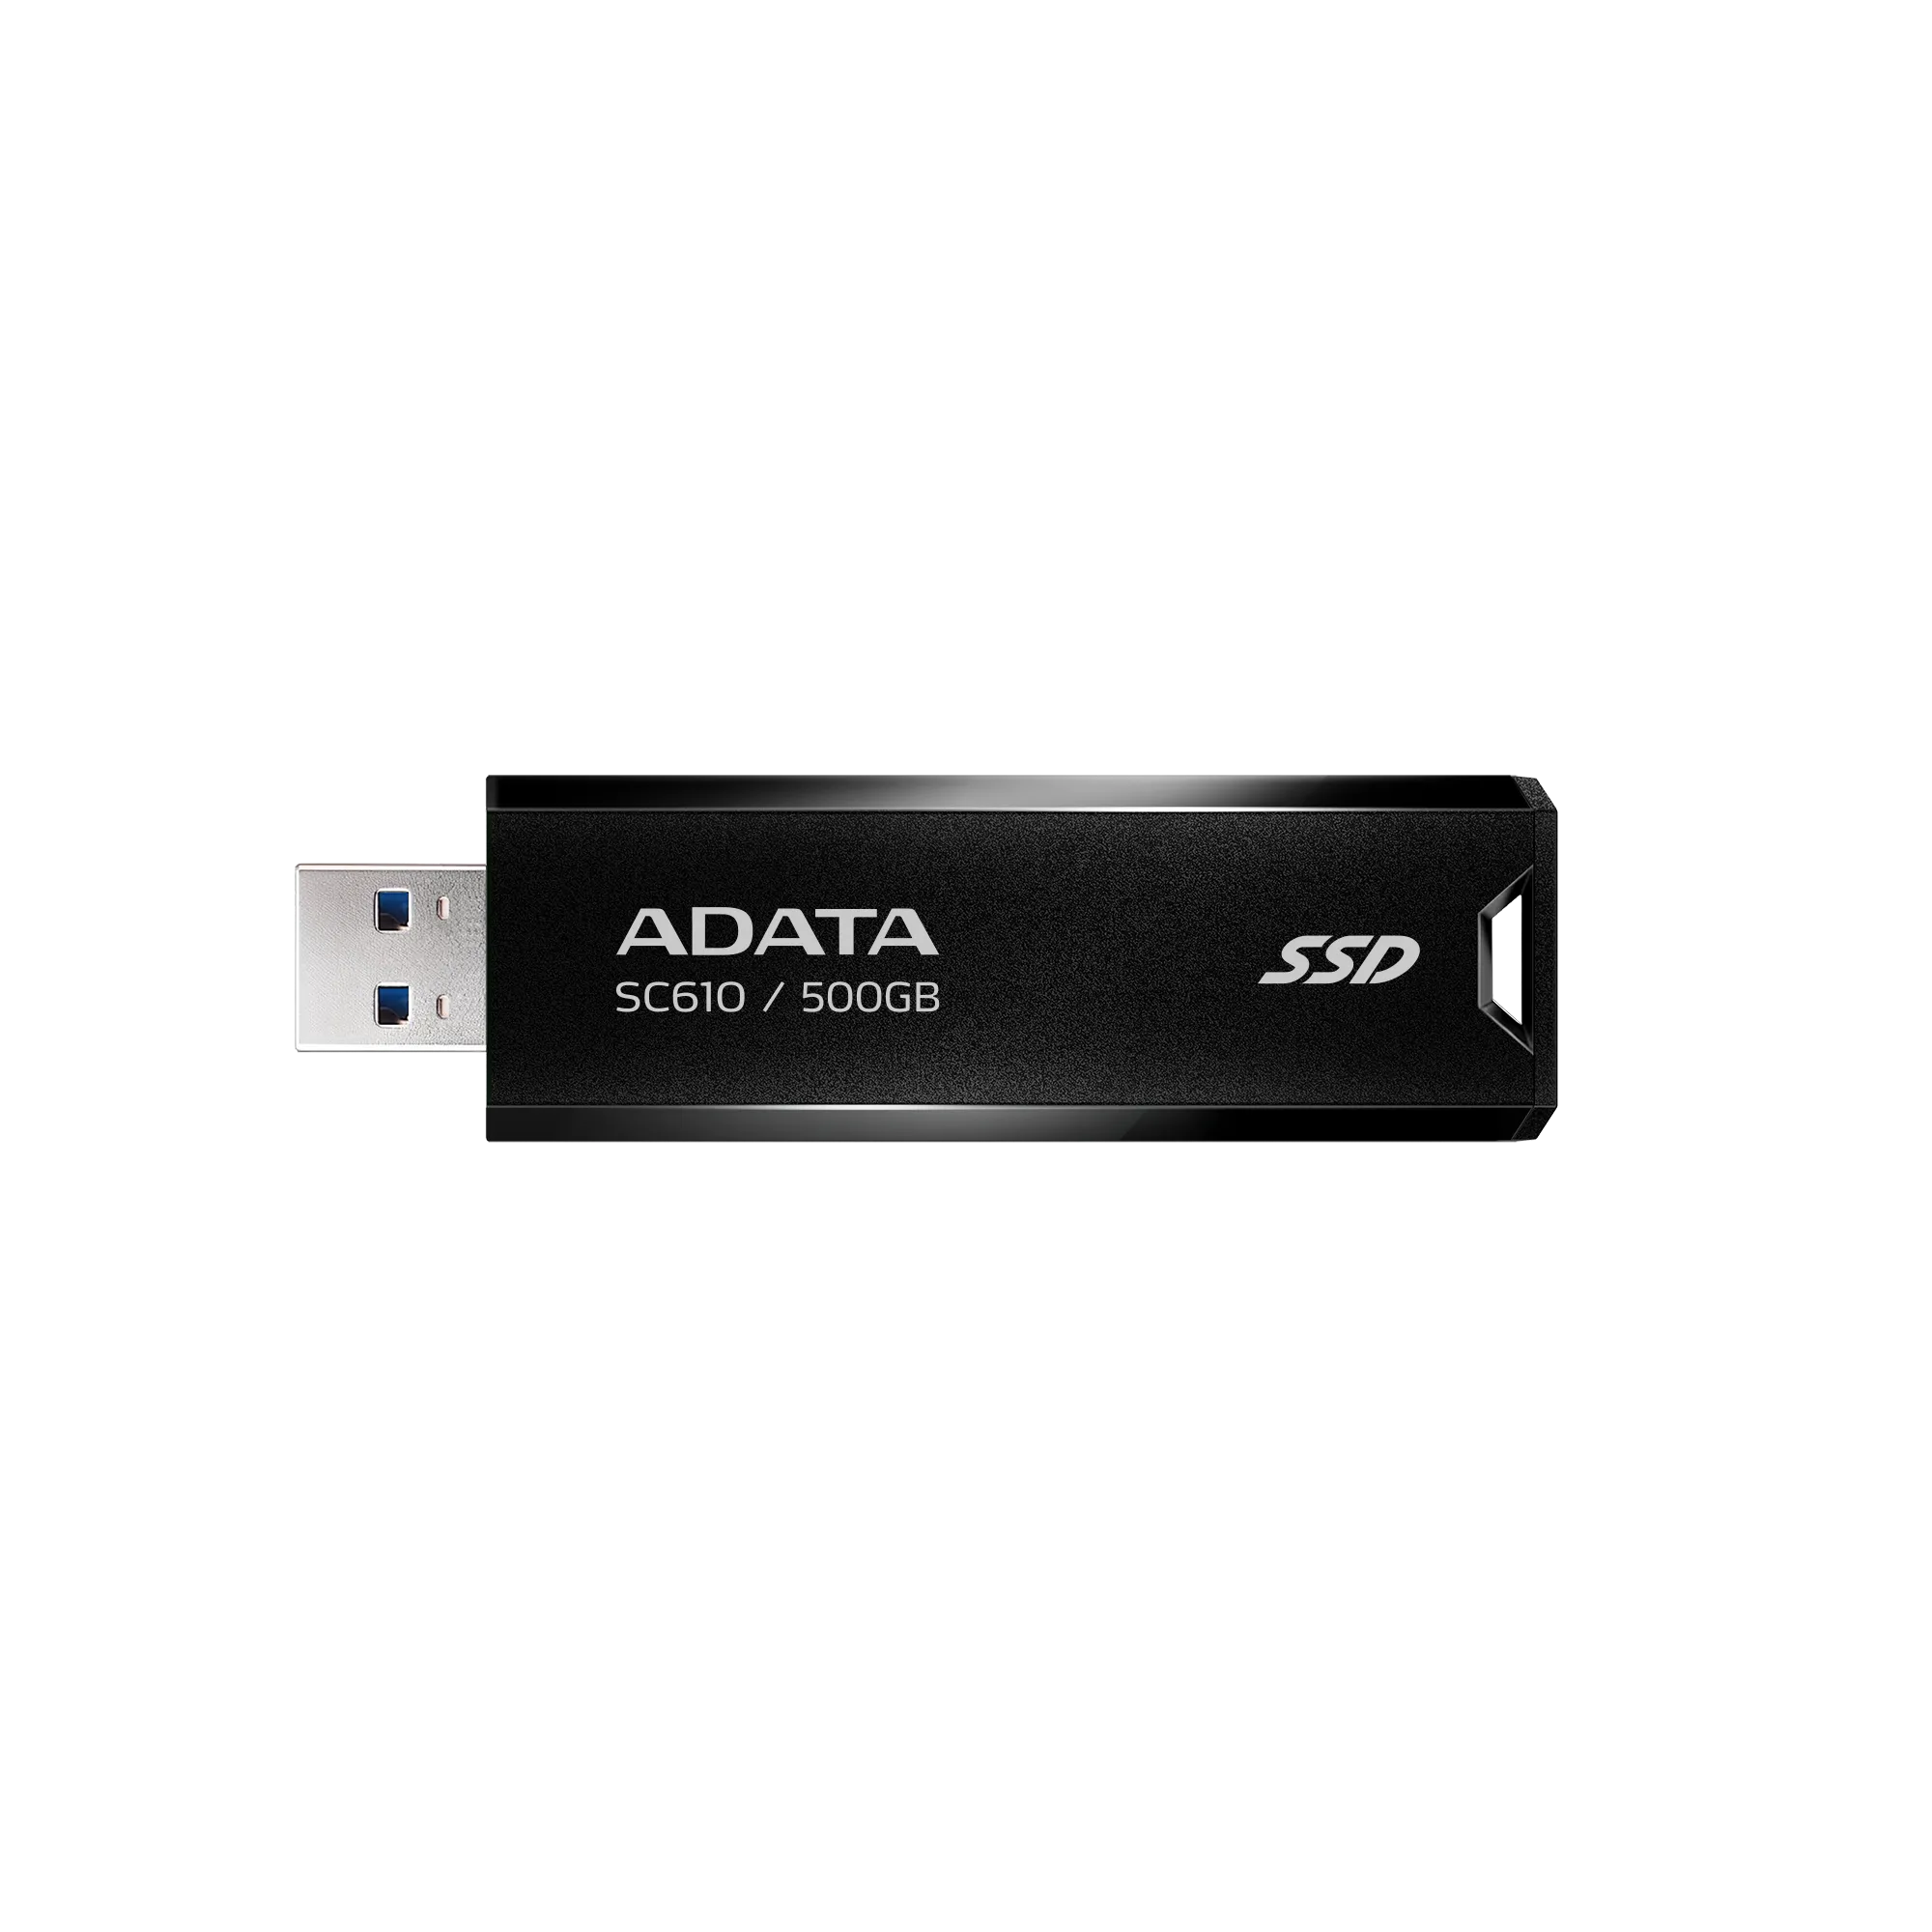 ADATA SC610 External SSD Stick